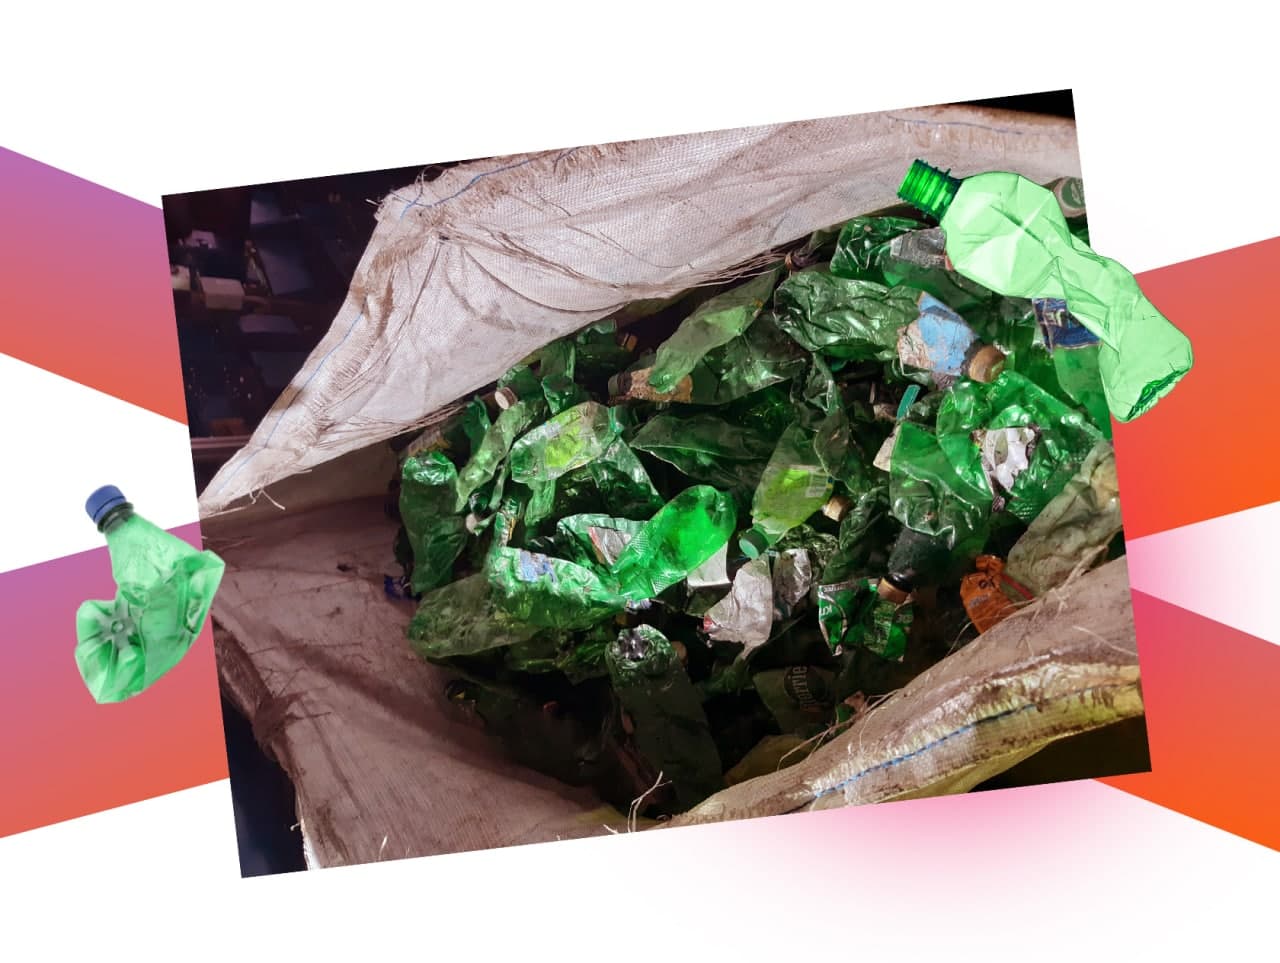 Качество отбора отходов. Источник изображения: Nevlabs и Зелёный